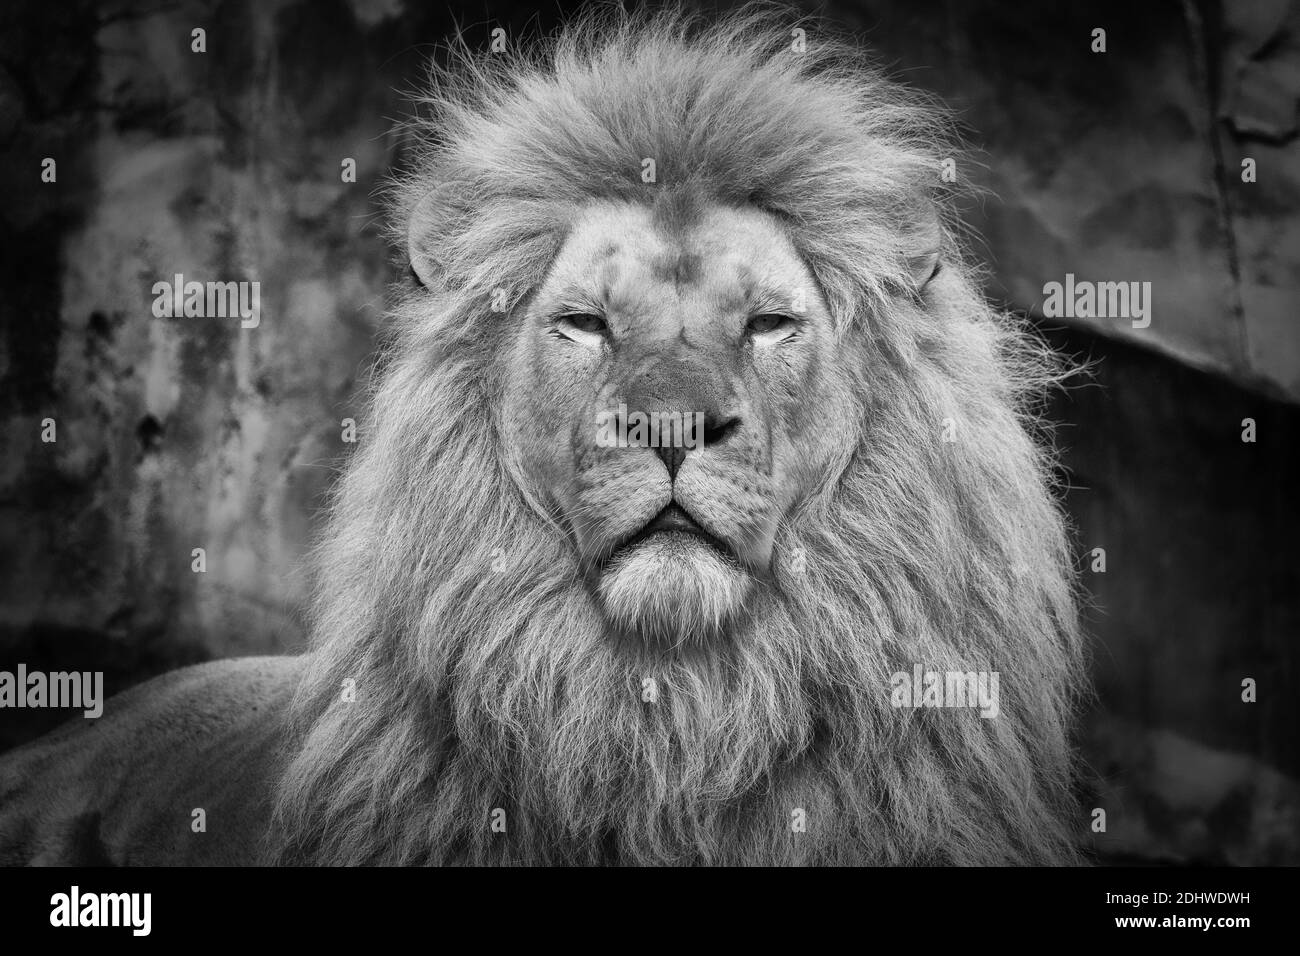 Ein schönes Foto von einem mächtigen Löwen in der Nähe von Umgehung fotografiert Stockfoto